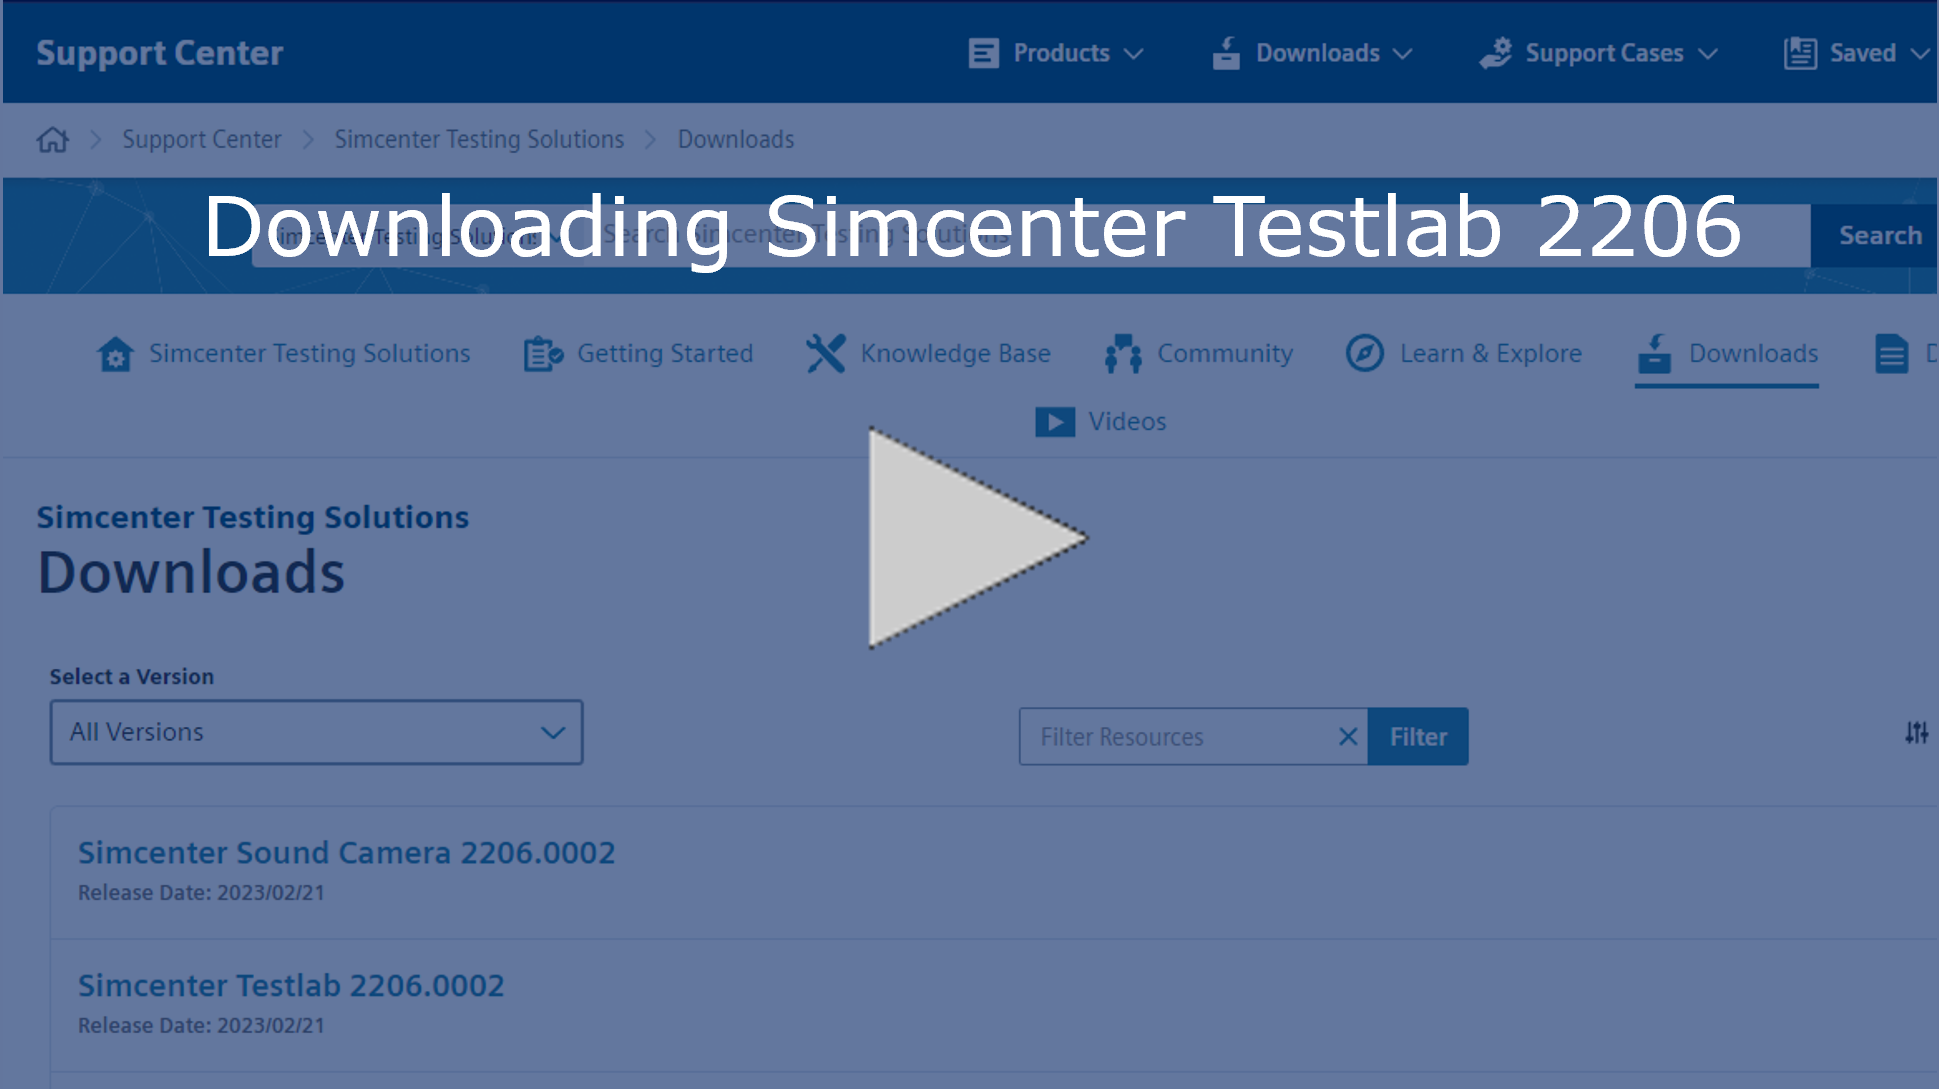 Image link for the video walkthrough of downloading Simcenter Testlab 2206.0002